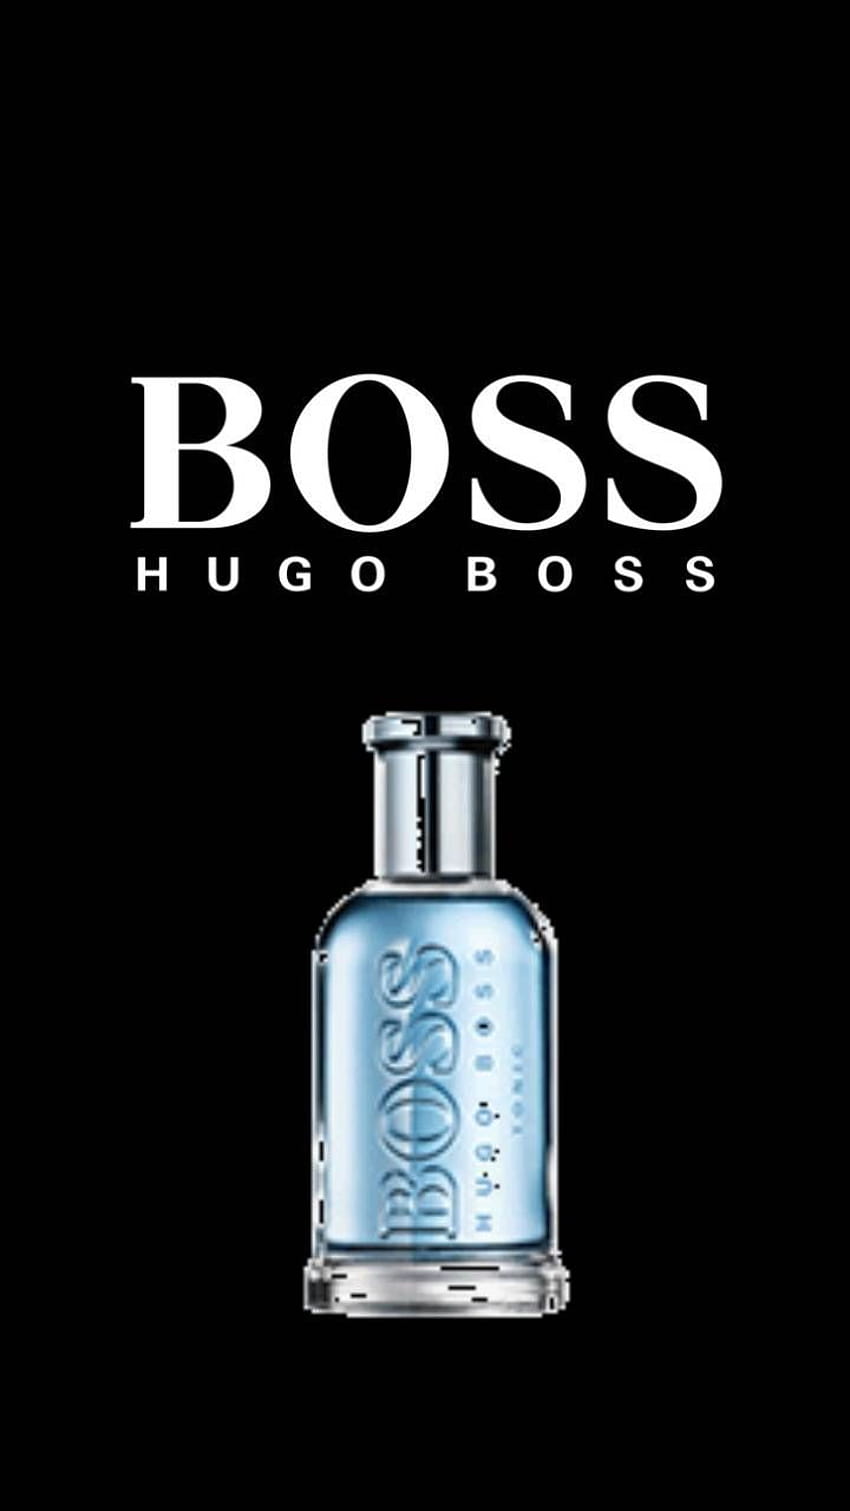 Hugo Boss, boss logo HD phone wallpaper